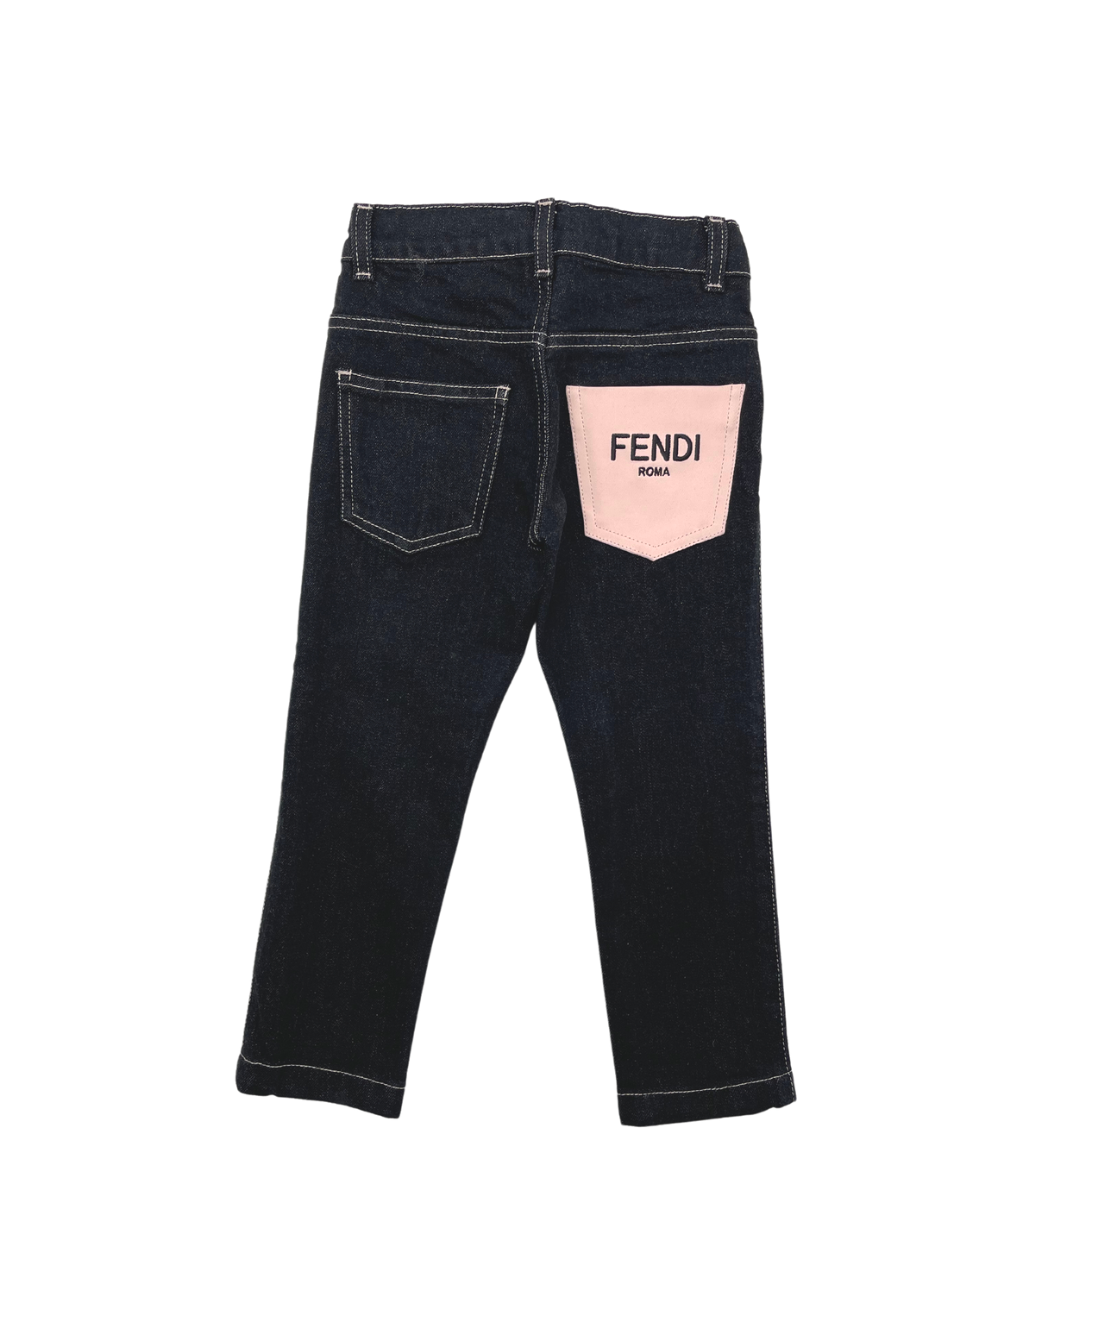 FENDI - Jean noir avec poche arrière rose avec logo - 4 ans